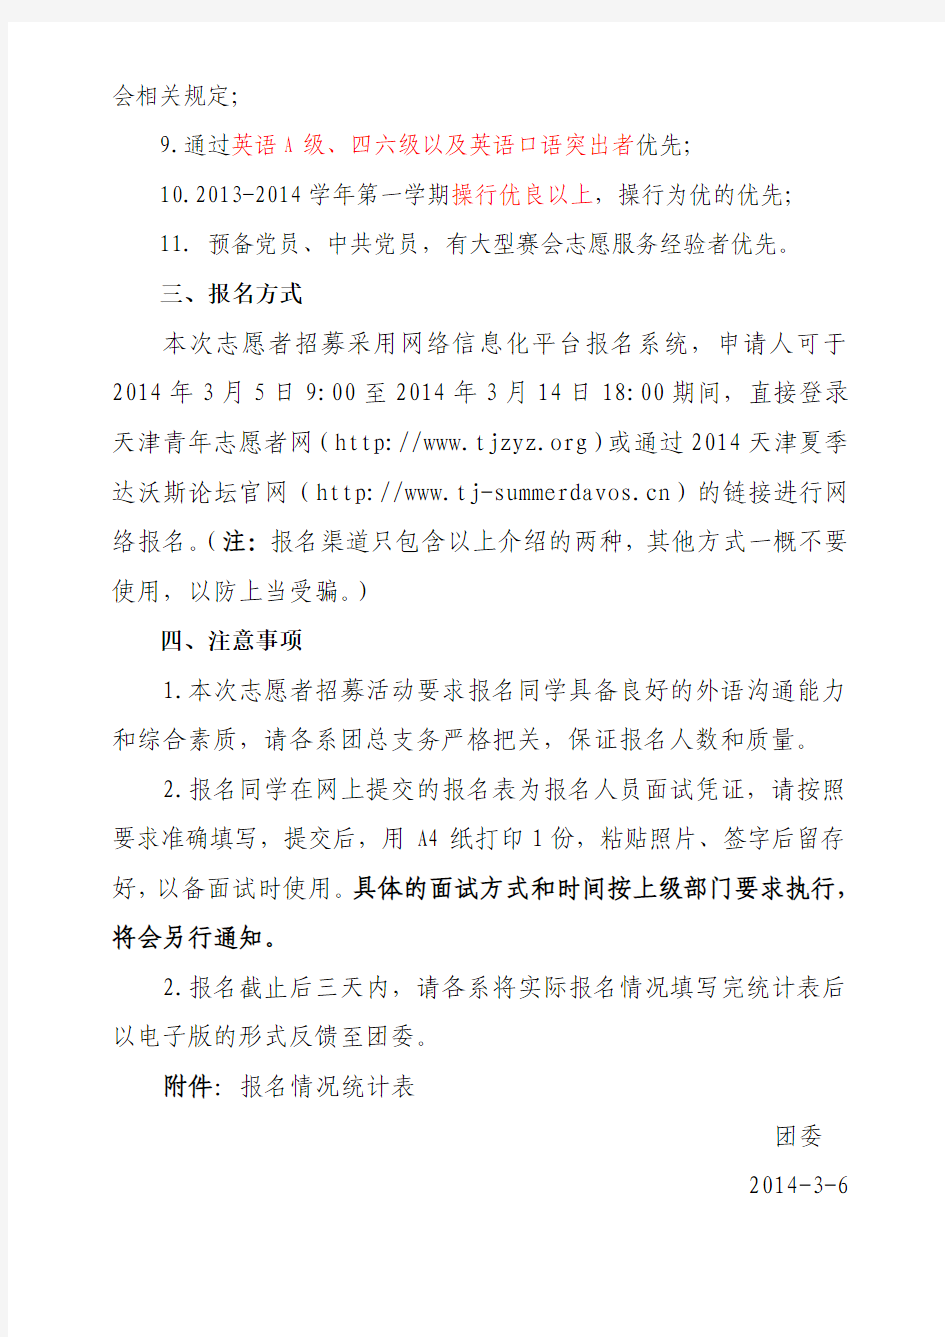 2014天津夏季达沃斯论坛志愿者招募基本条件